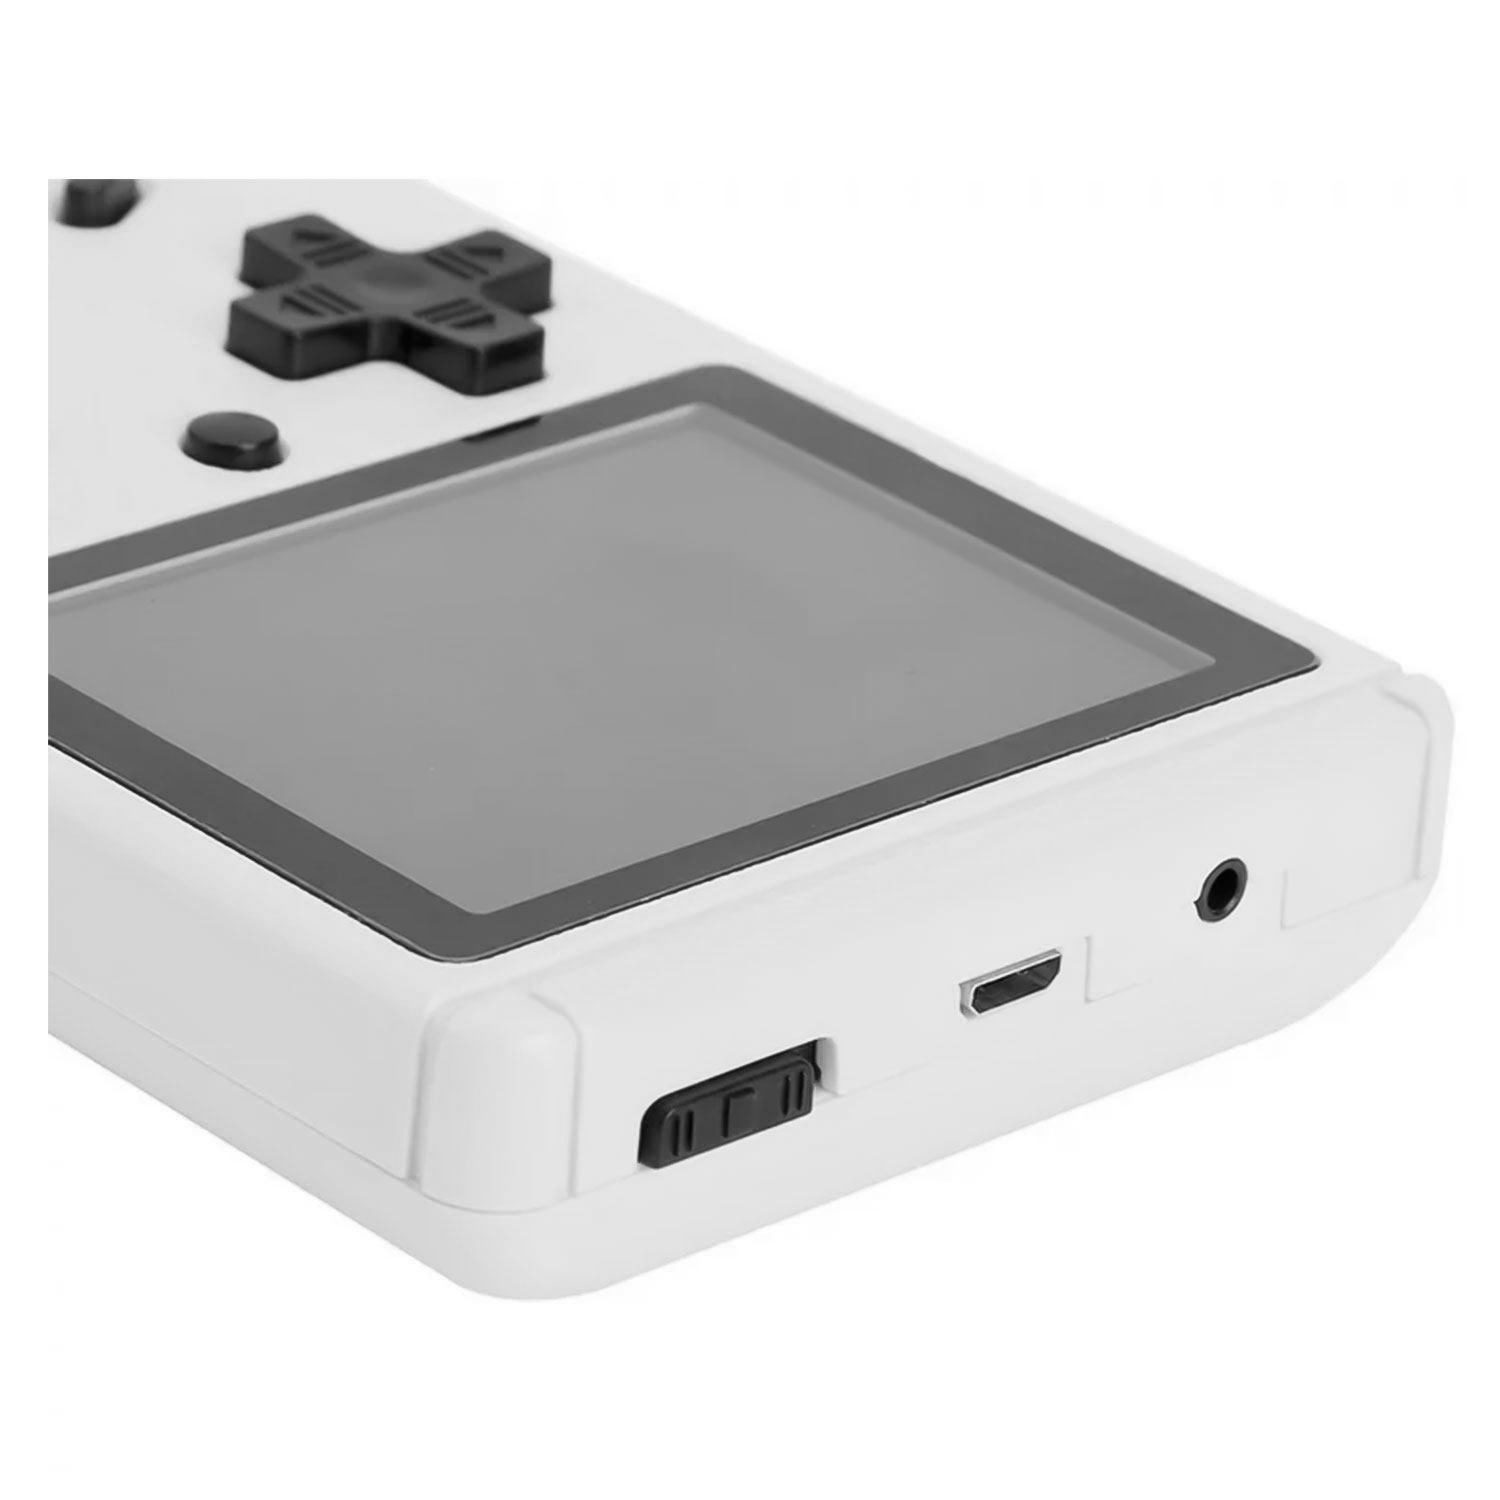 Console Portátil Game Boy Game Box Plus 500 Jogos - Cinza